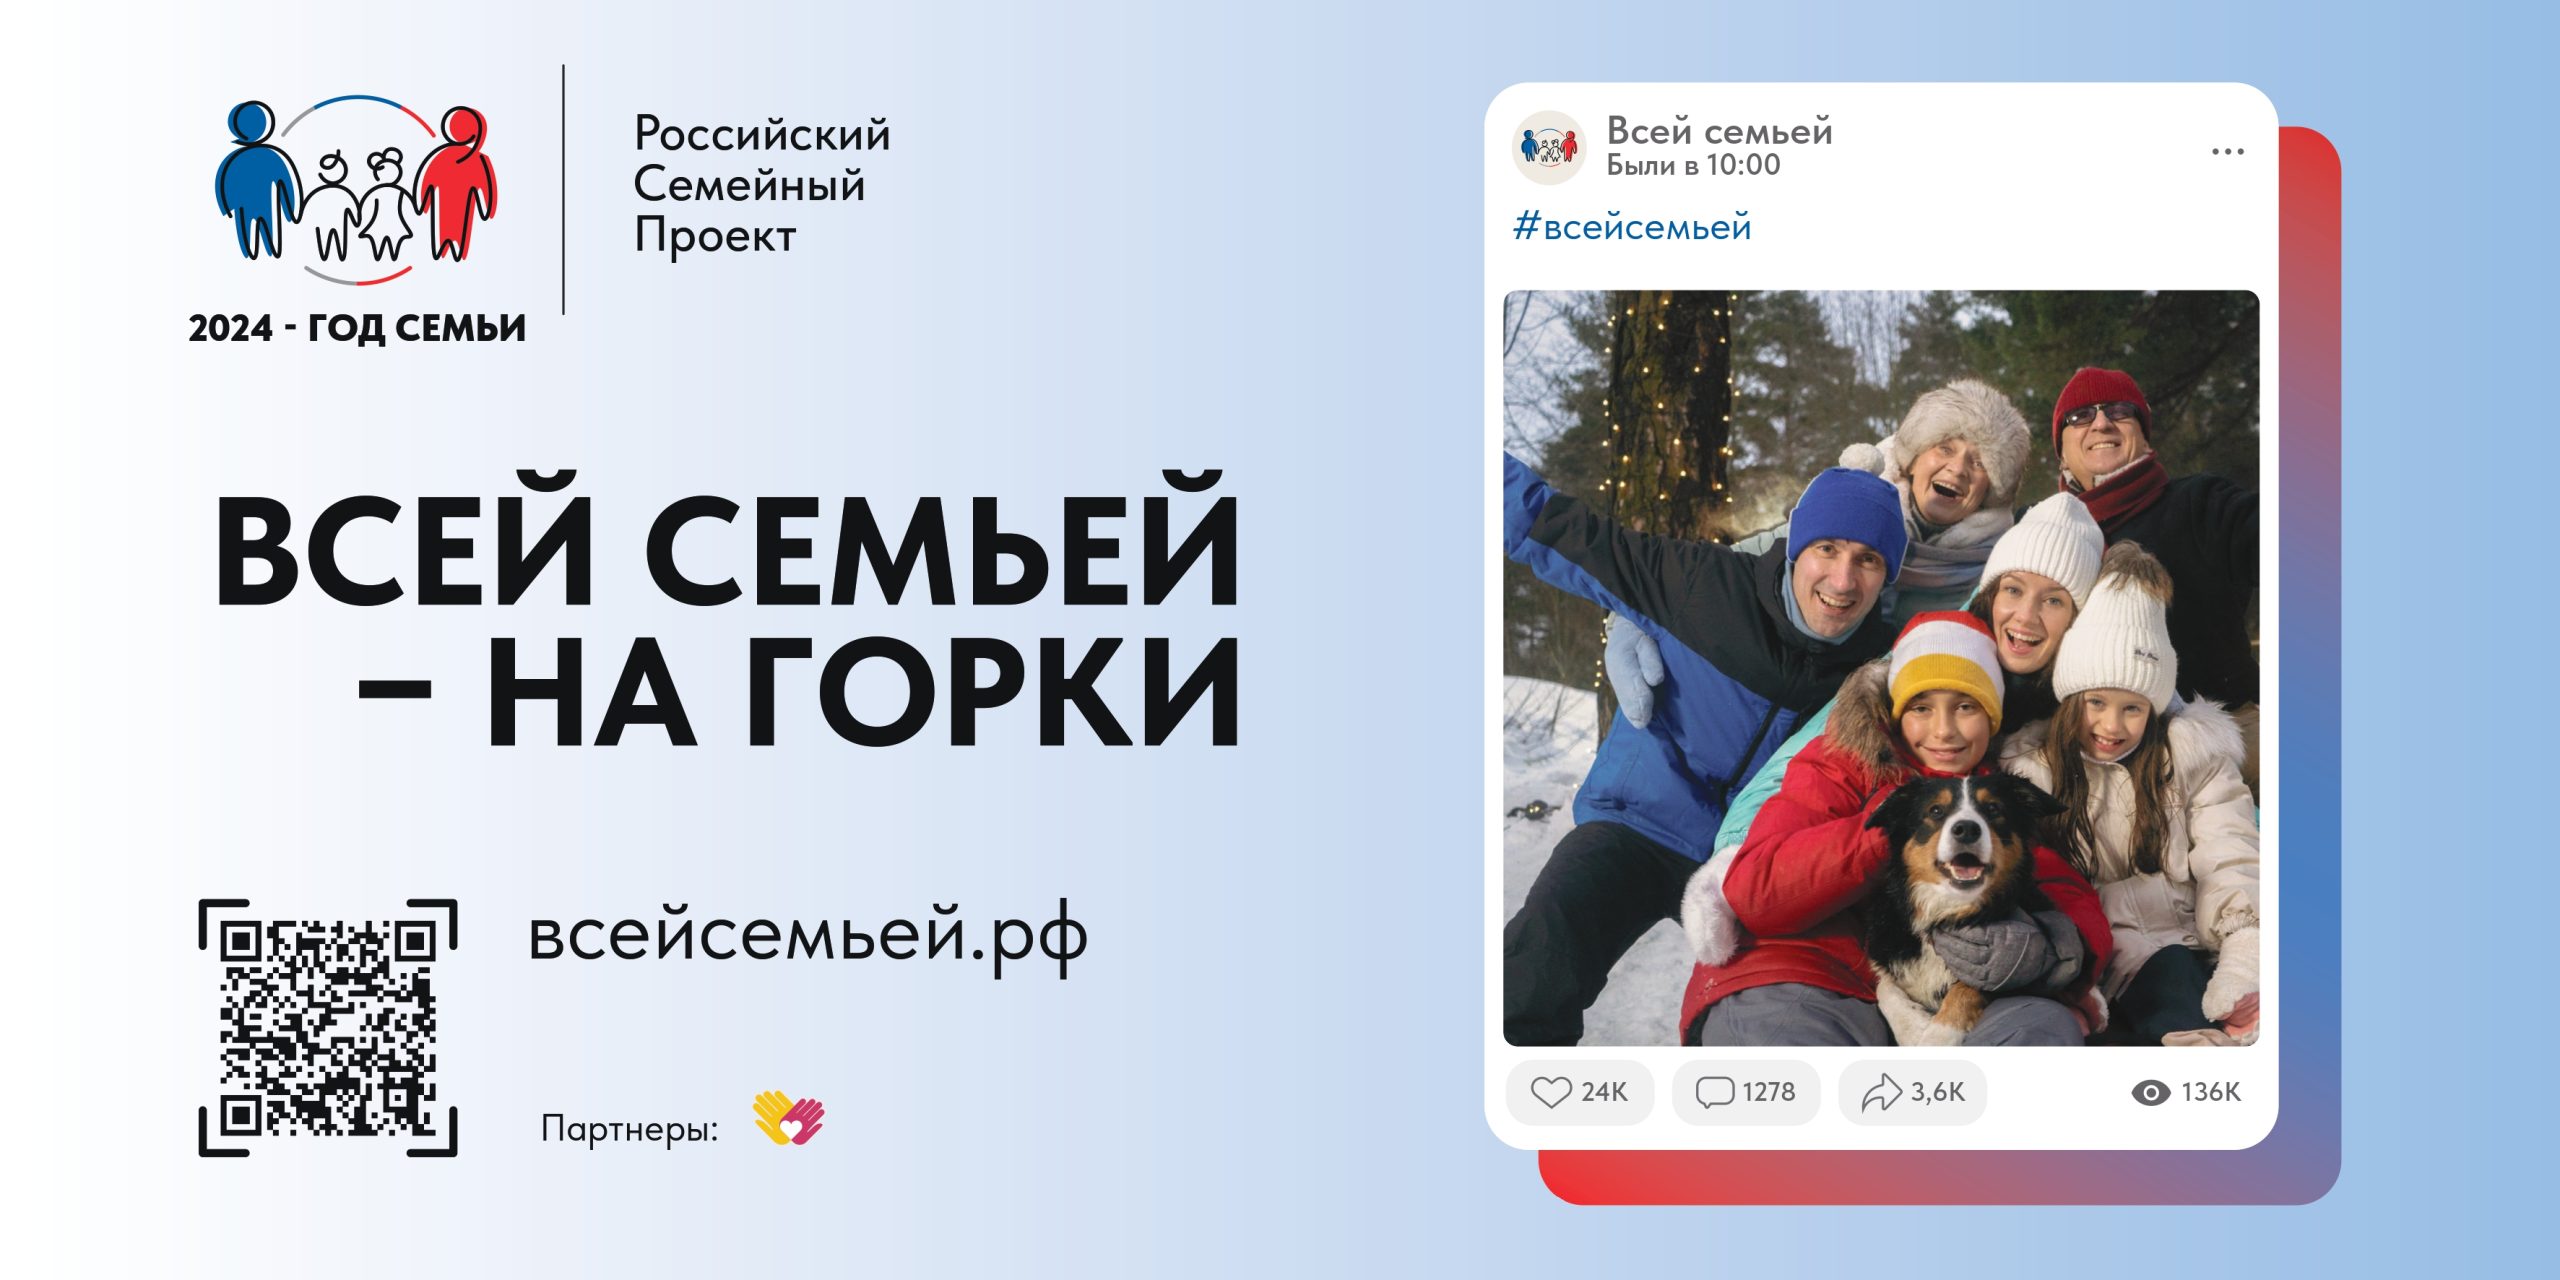 Российский семейный проект “Всей семьей”